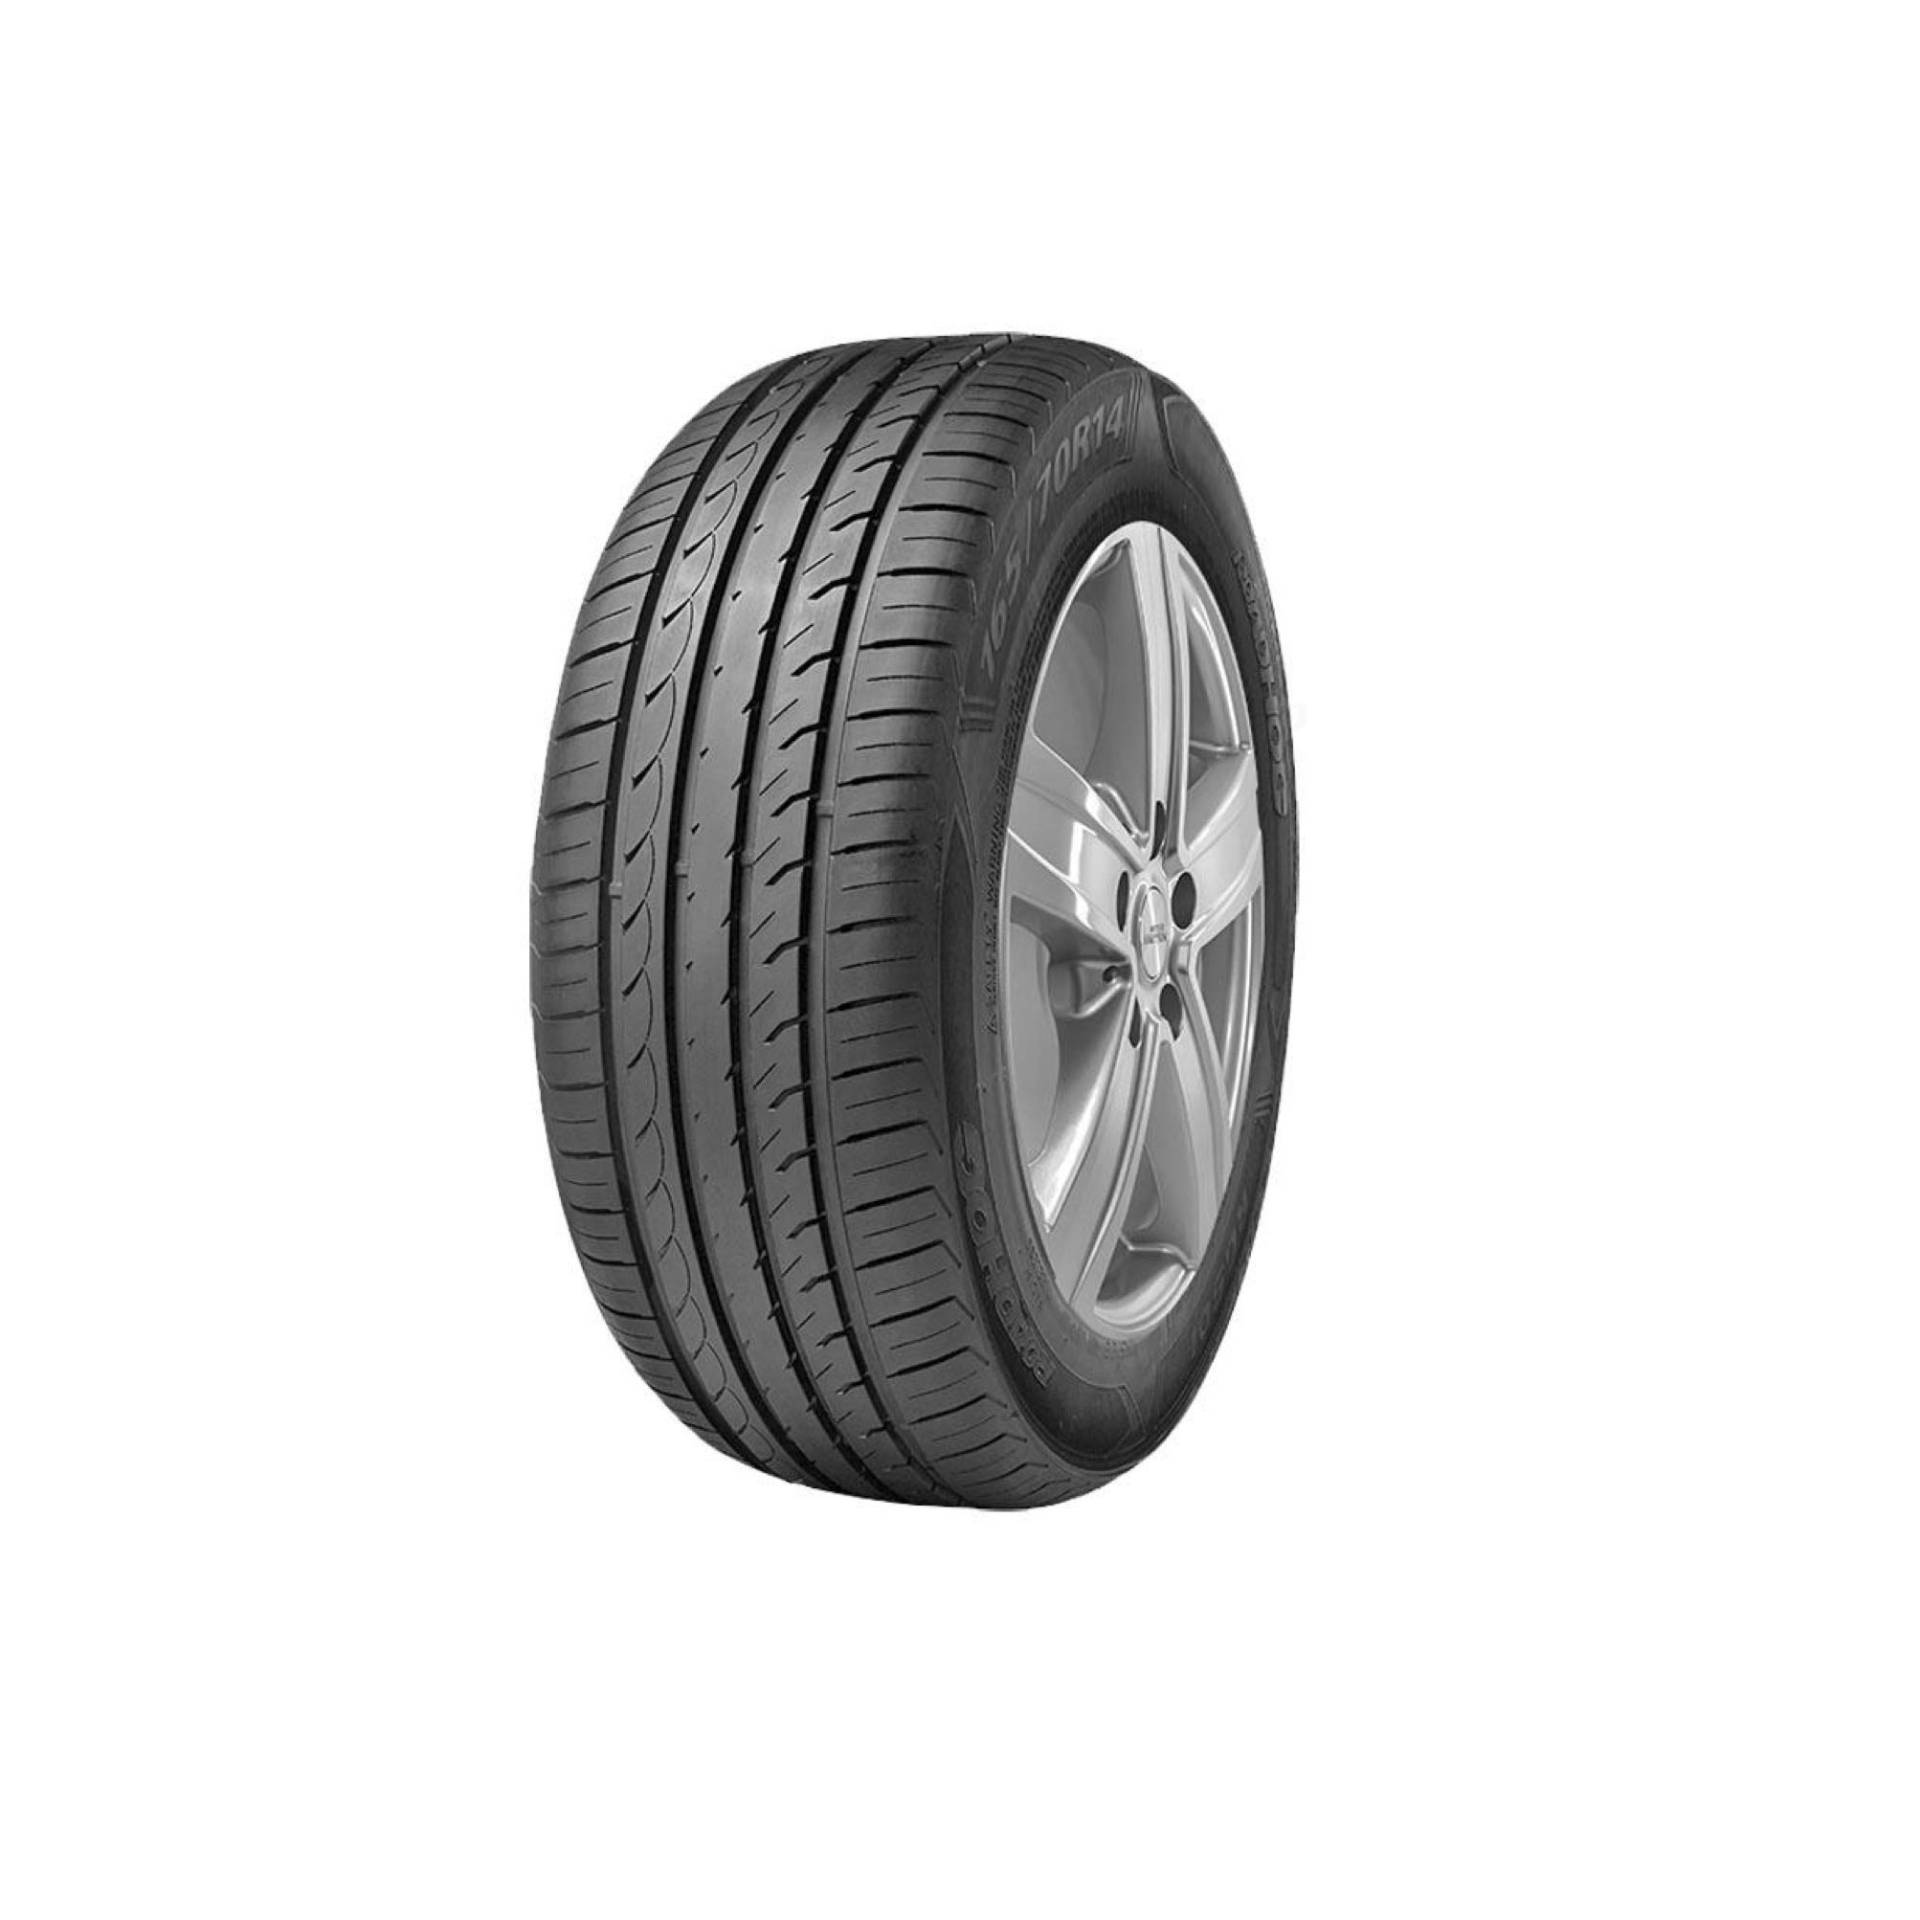 Reifen pneus Roadhog Rg s01 195 50 R15 82V TL sommerreifen autoreifen von Roadhog